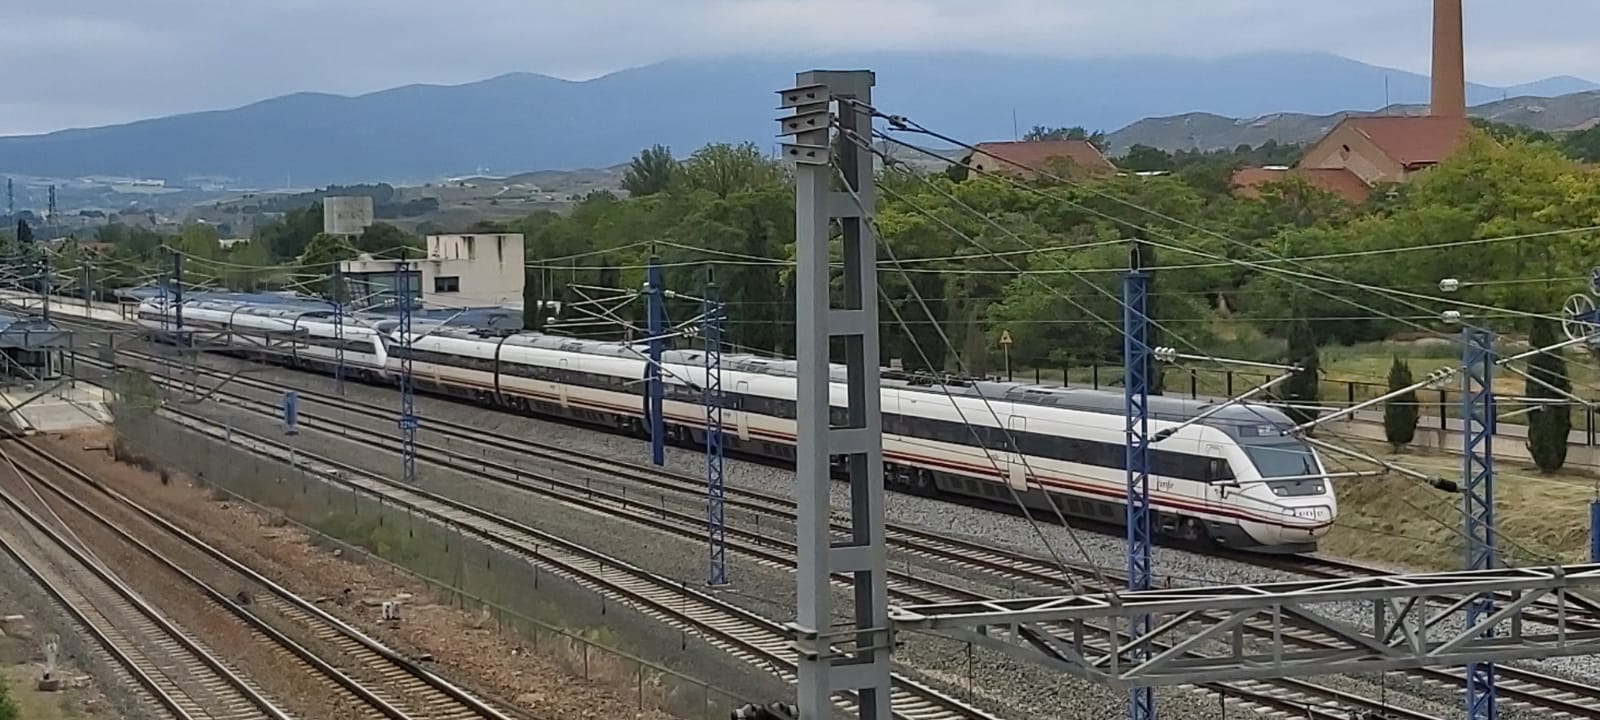 Foto: Tren Alvia - Calatayud (Zaragoza), España